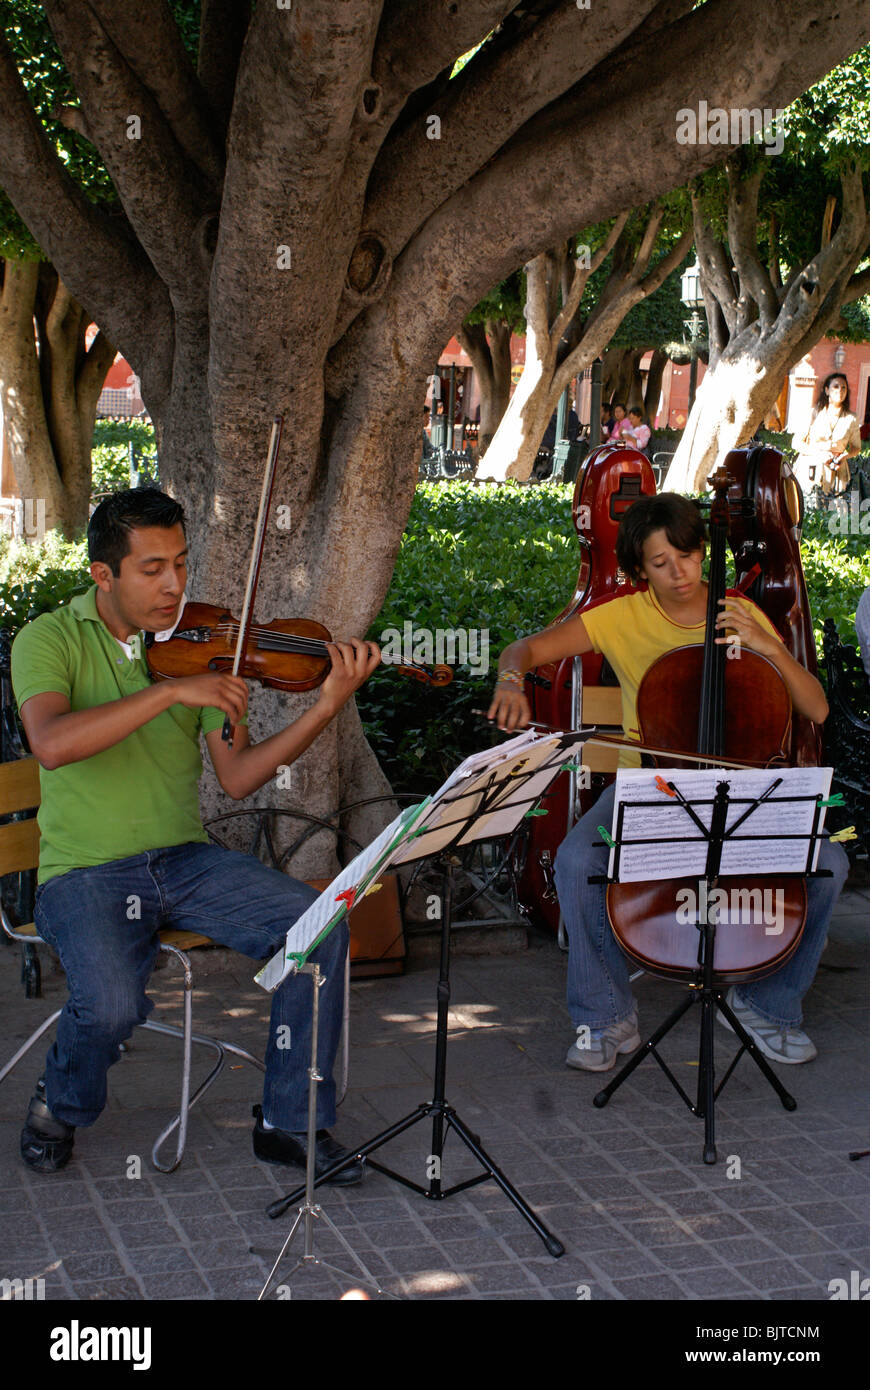 Music students performing in El Jardin in San Miguel de Allende, Guanajuato, Mexico Stock Photo